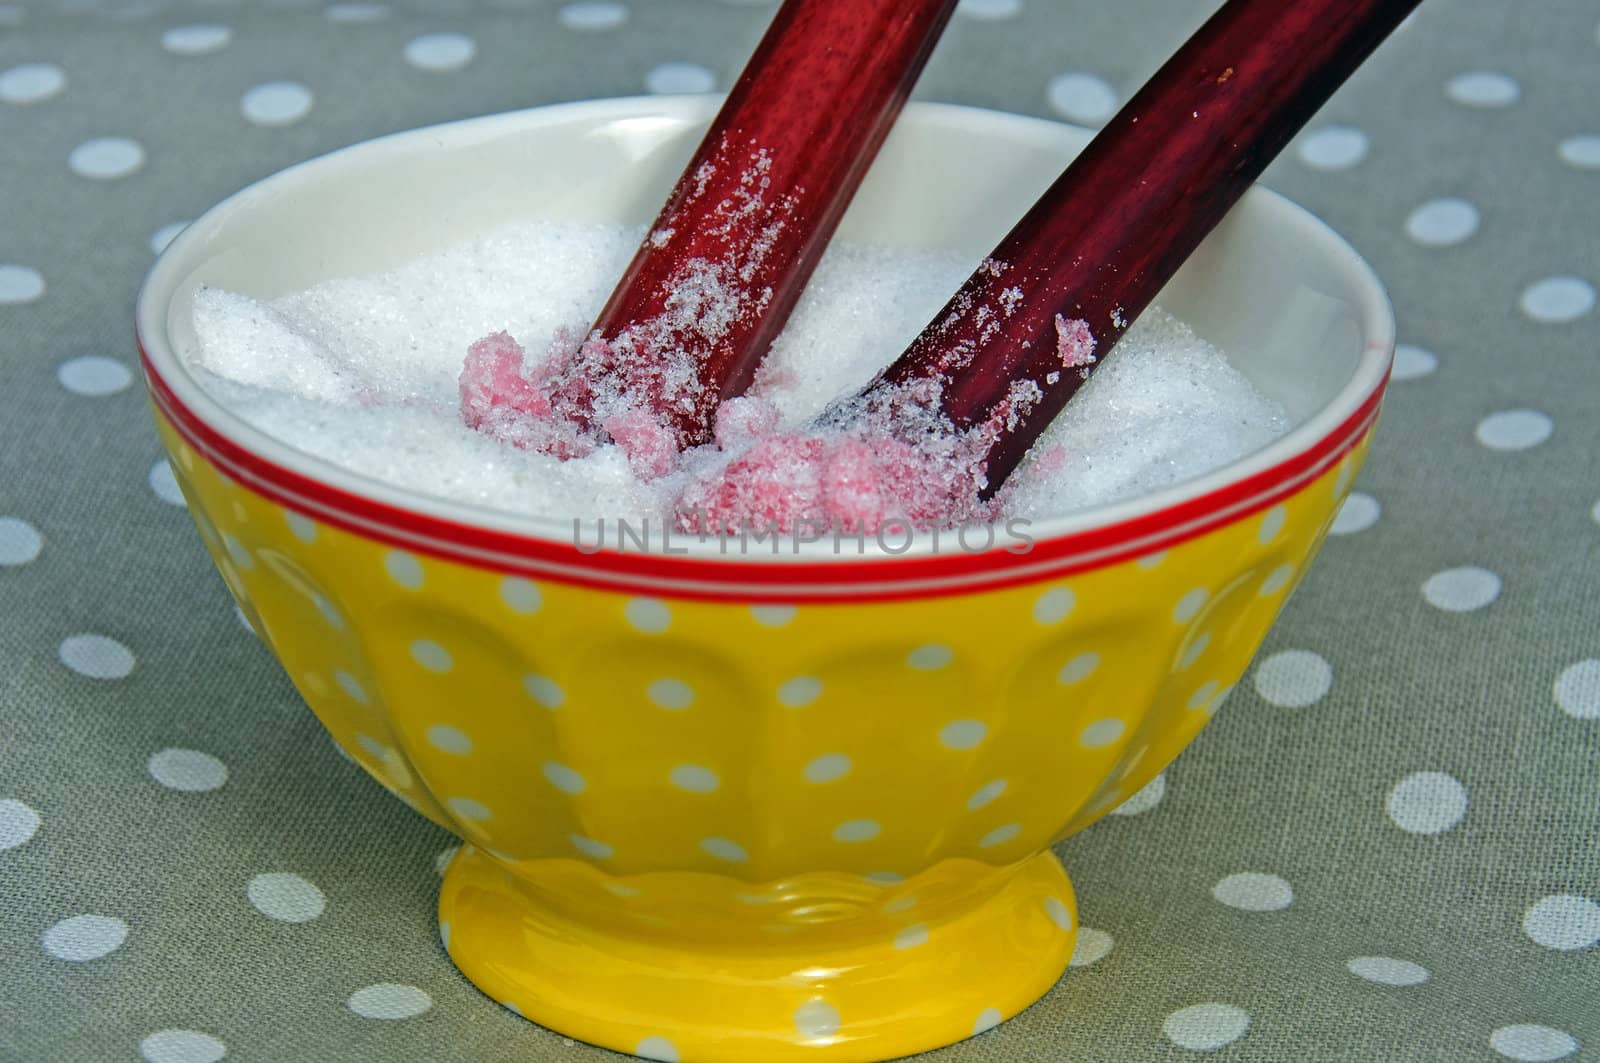 Rhubarb stems dipped in sugar by GryT